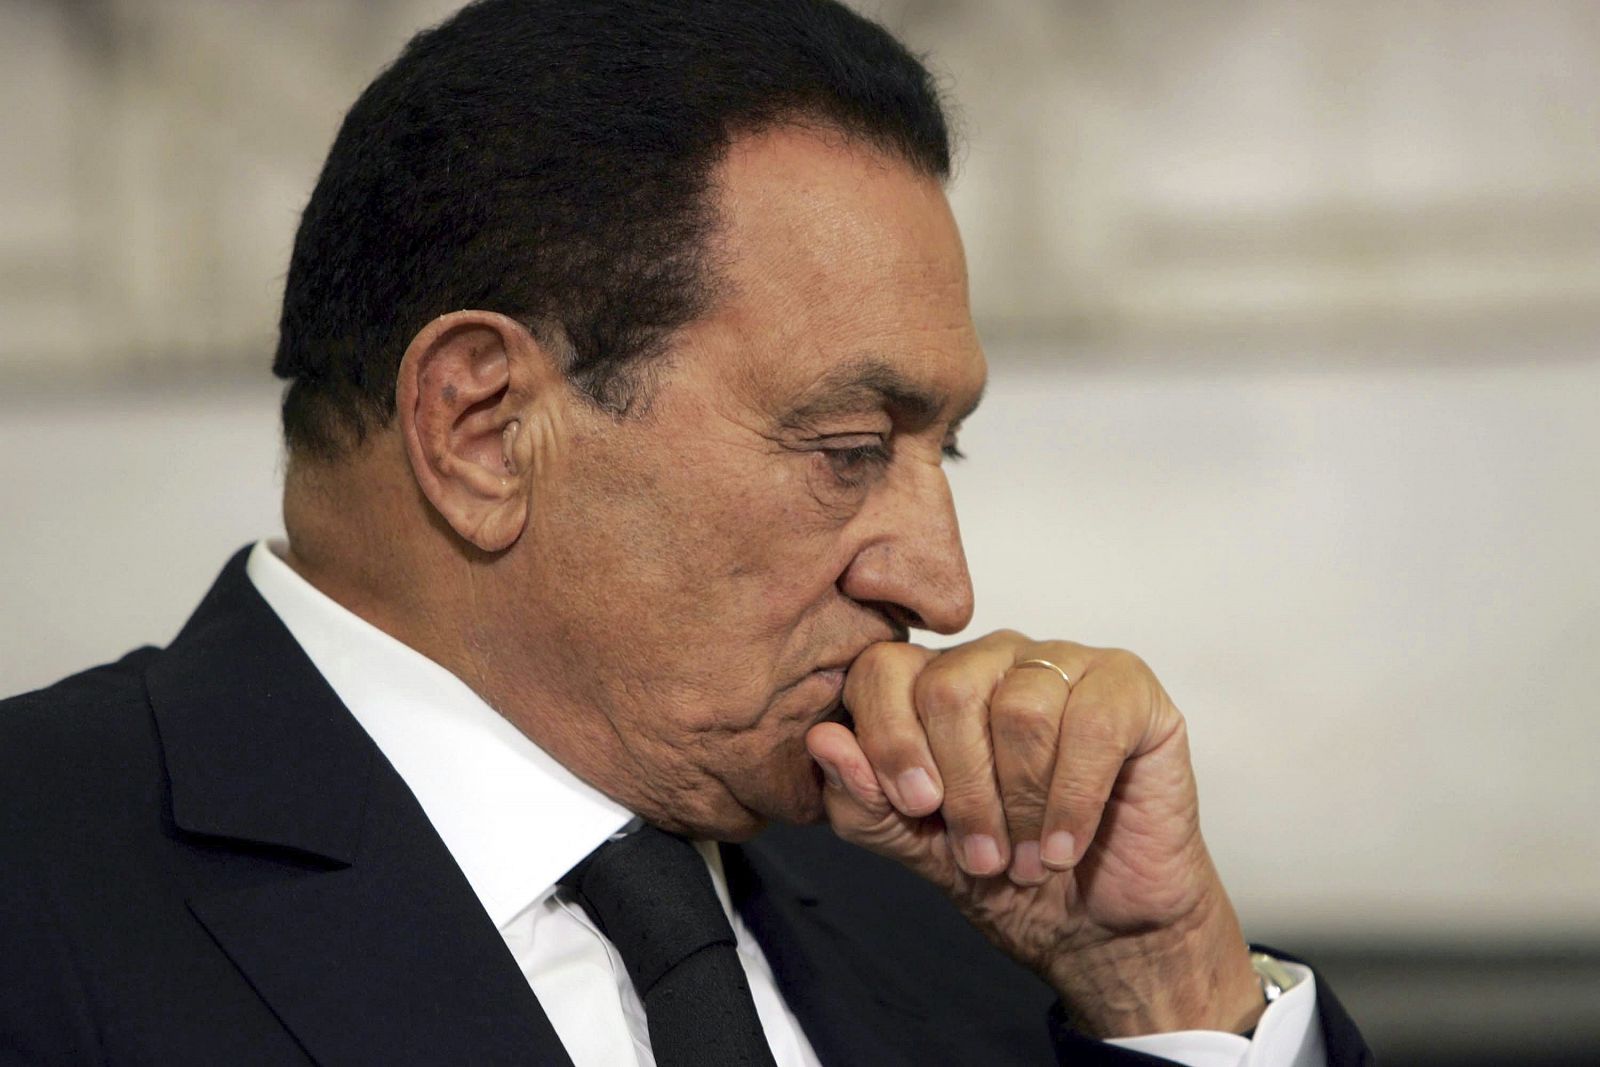 El expresidente egipcio, Hosni Mubarak, sigue hospitalizado tras sufrir en abril un ataque al corazón.